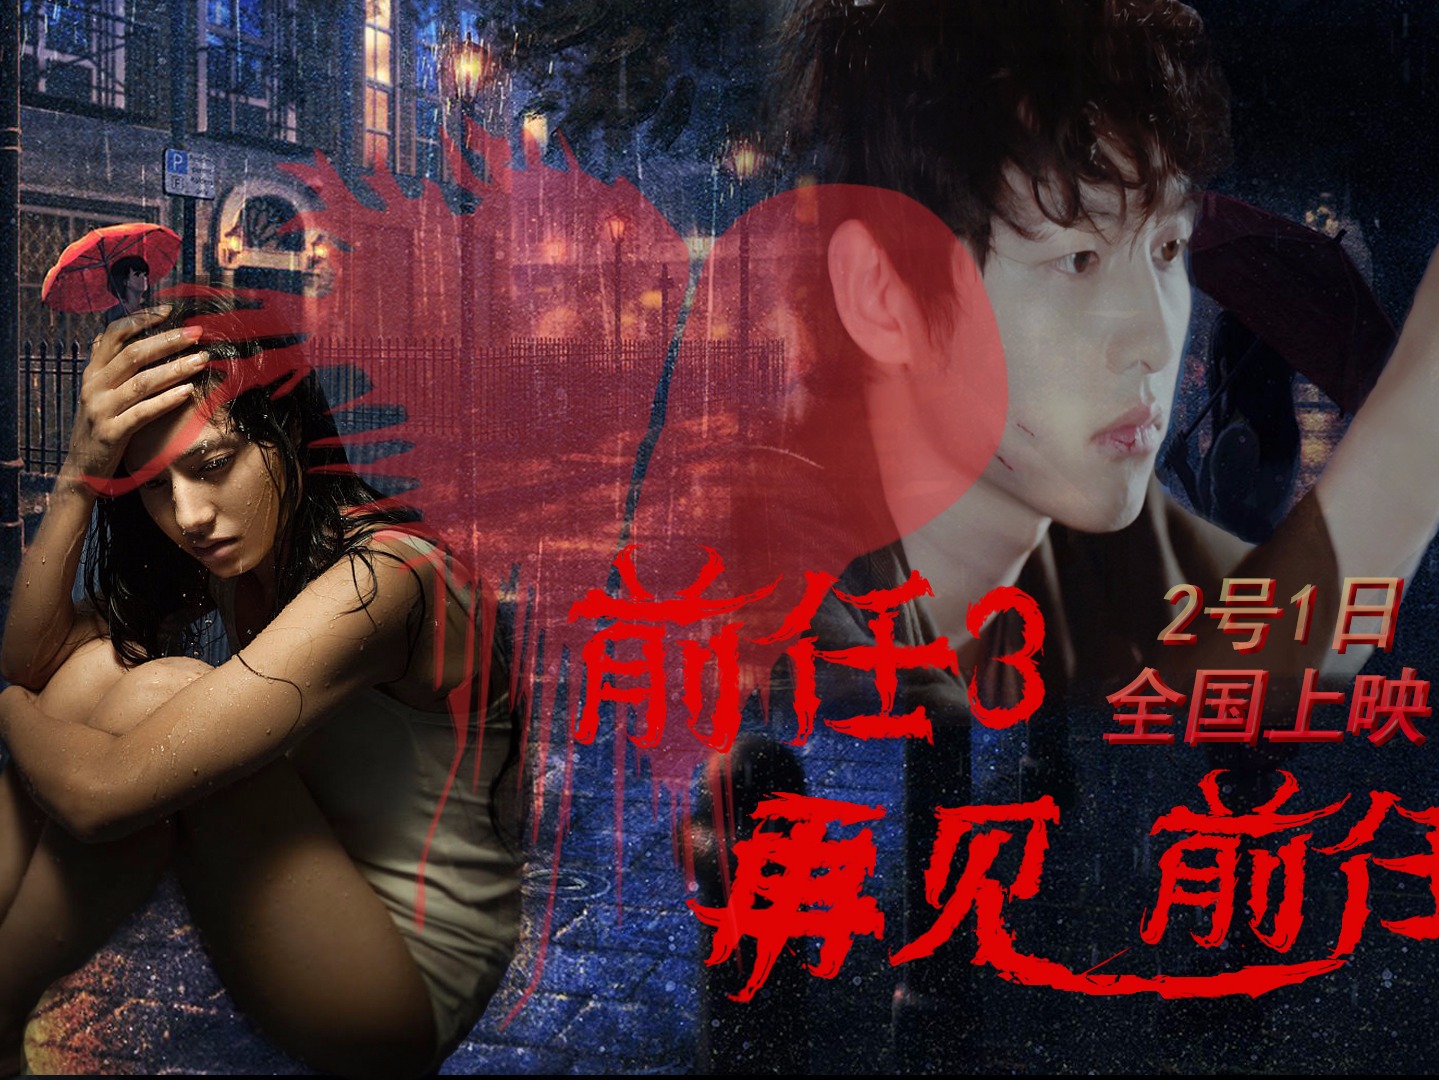 《前任3》发同名宣传曲MV 歌词诠释洒脱少女心